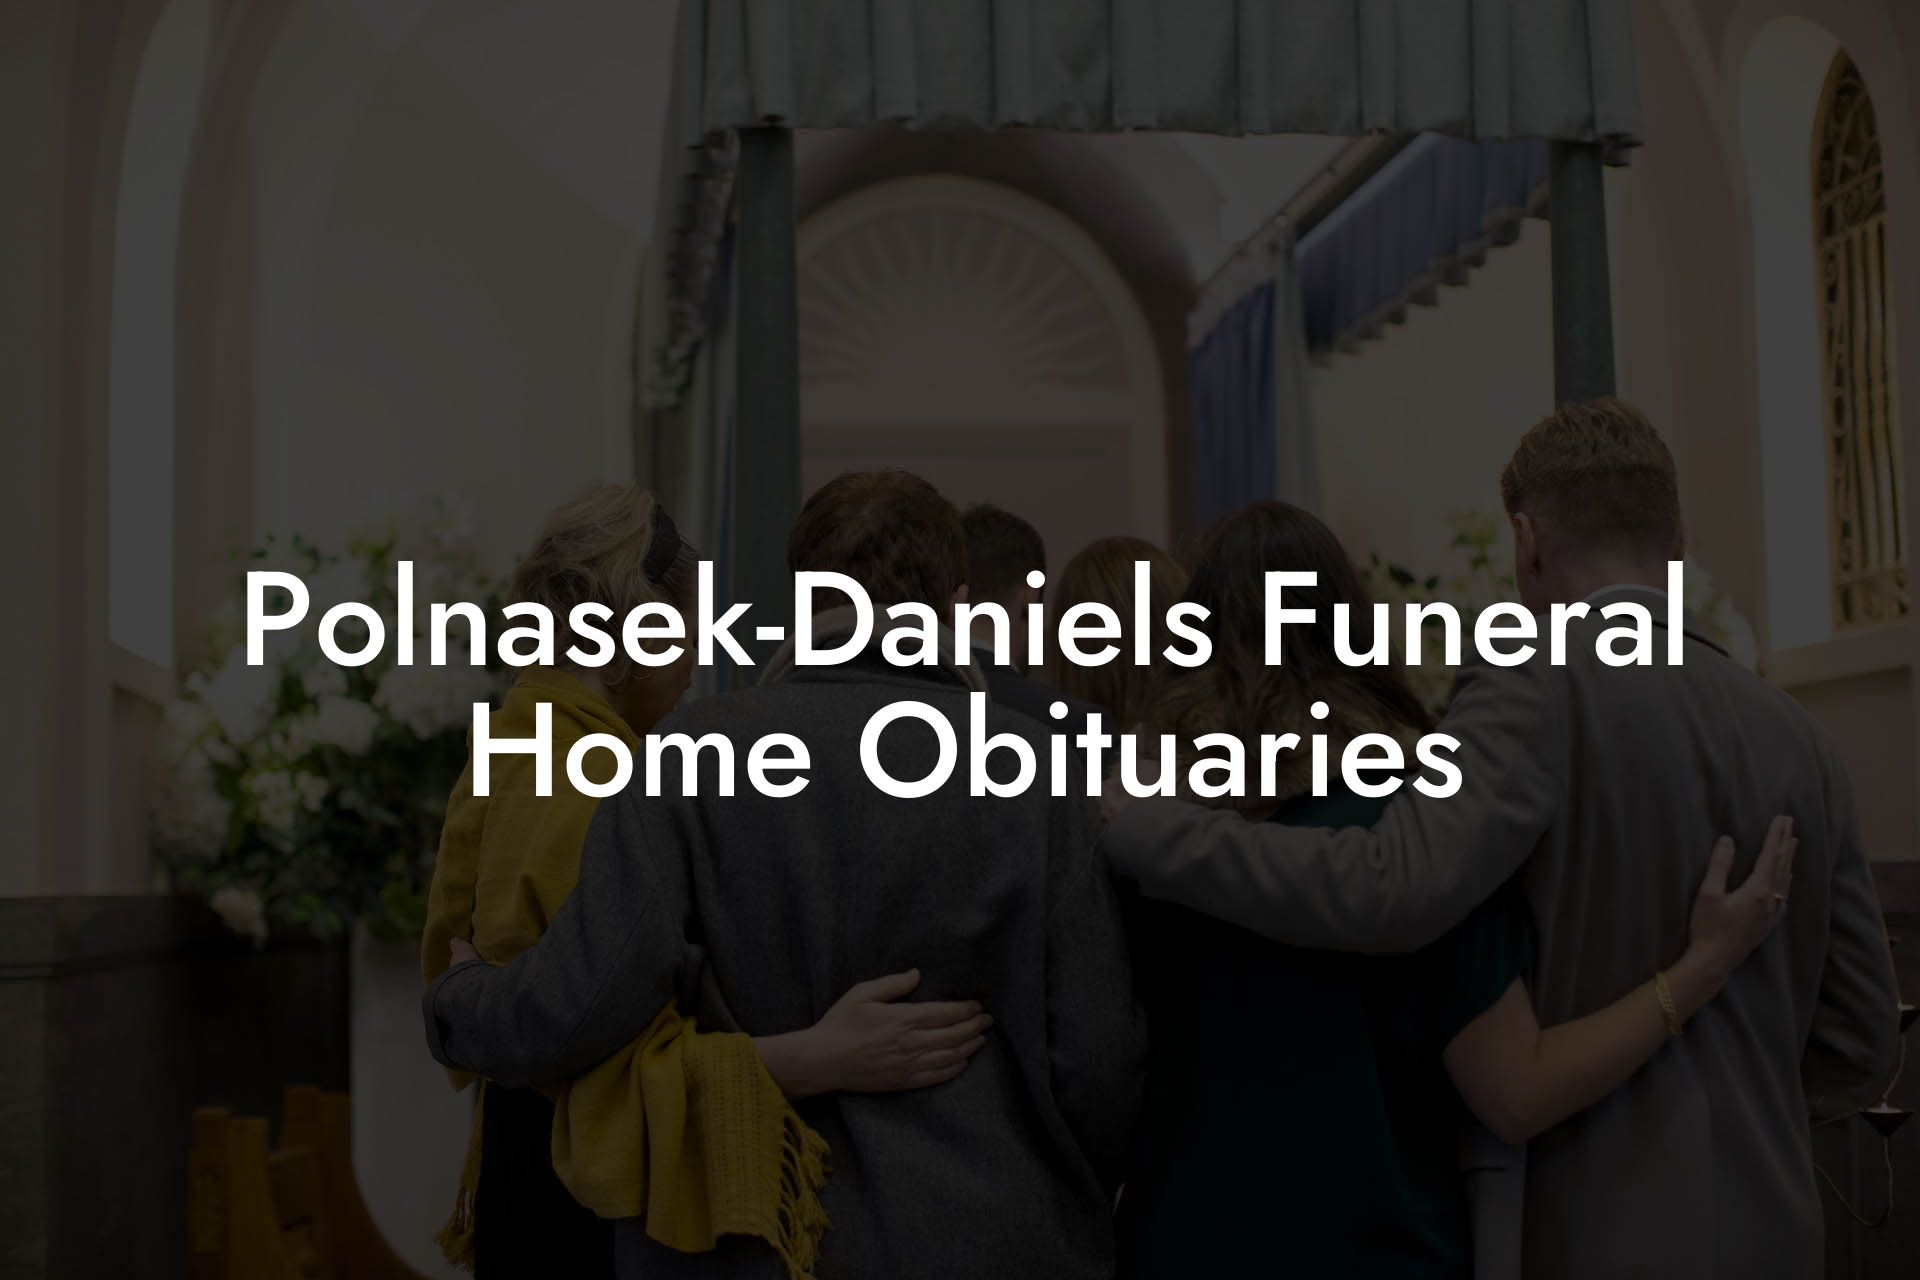 Polnasek-Daniels Funeral Home Obituaries